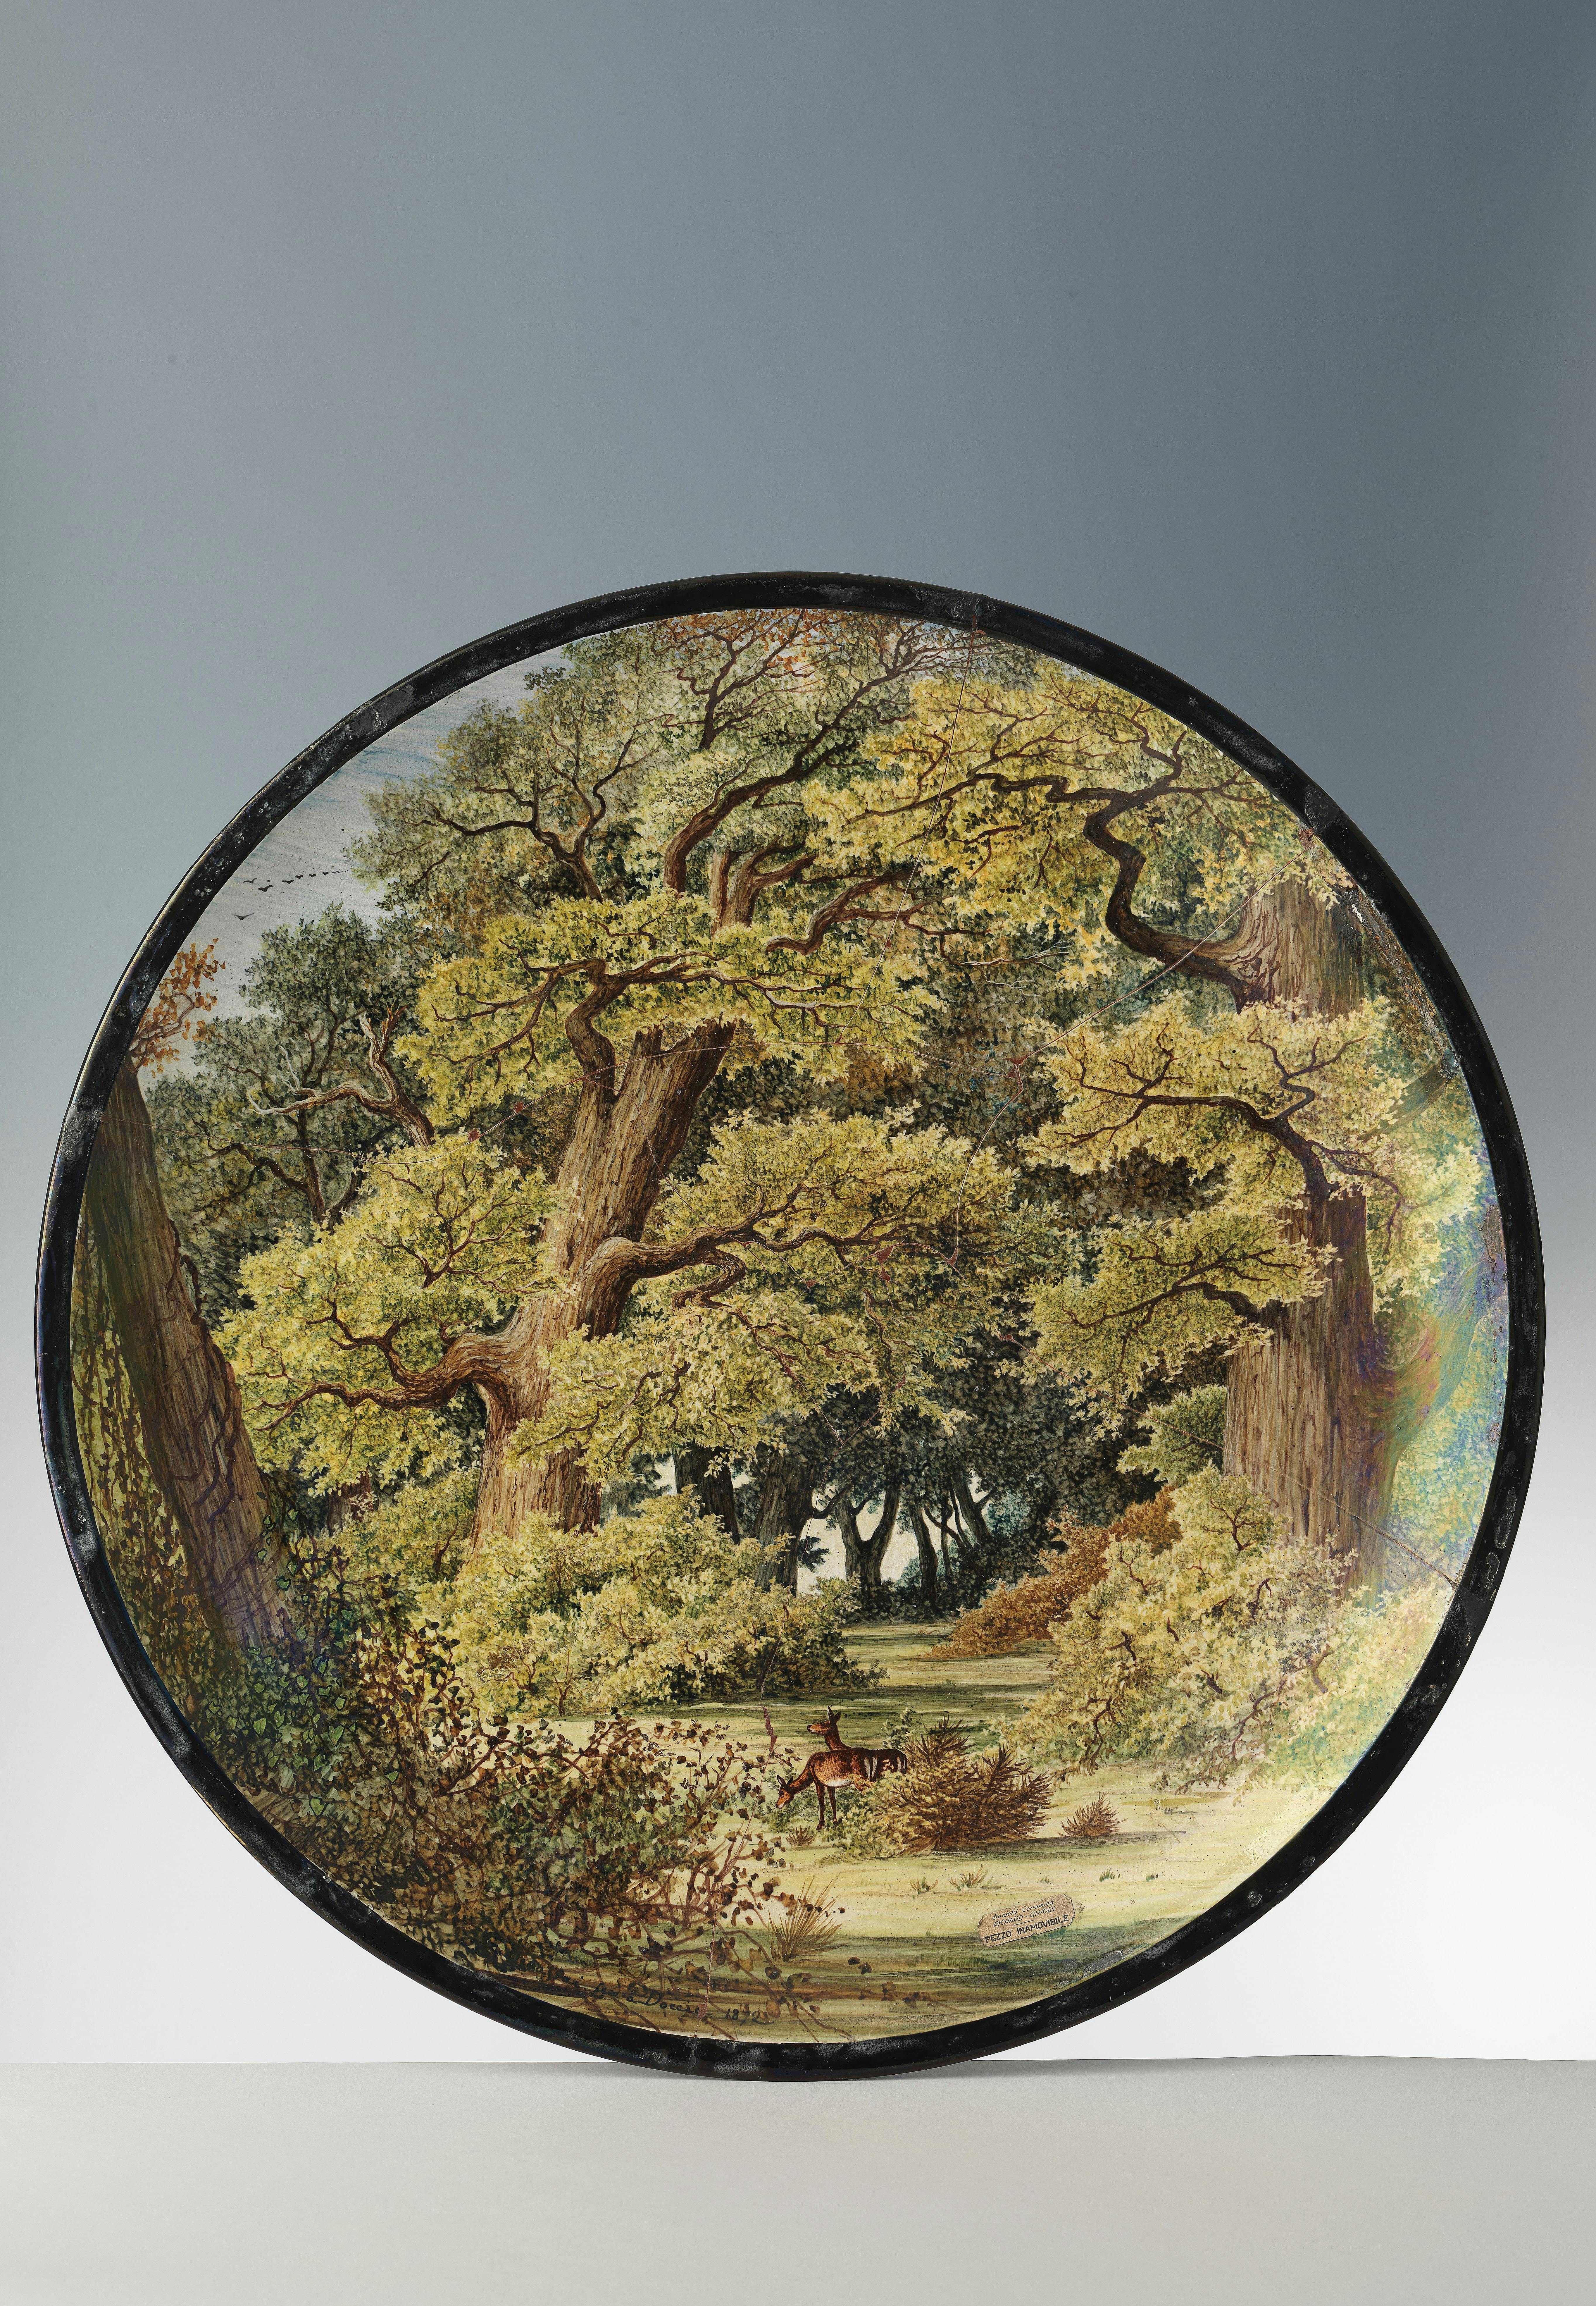 Il piatto è interamente decorato con la raffigurazione di un bosco con alberi ad alto fusto